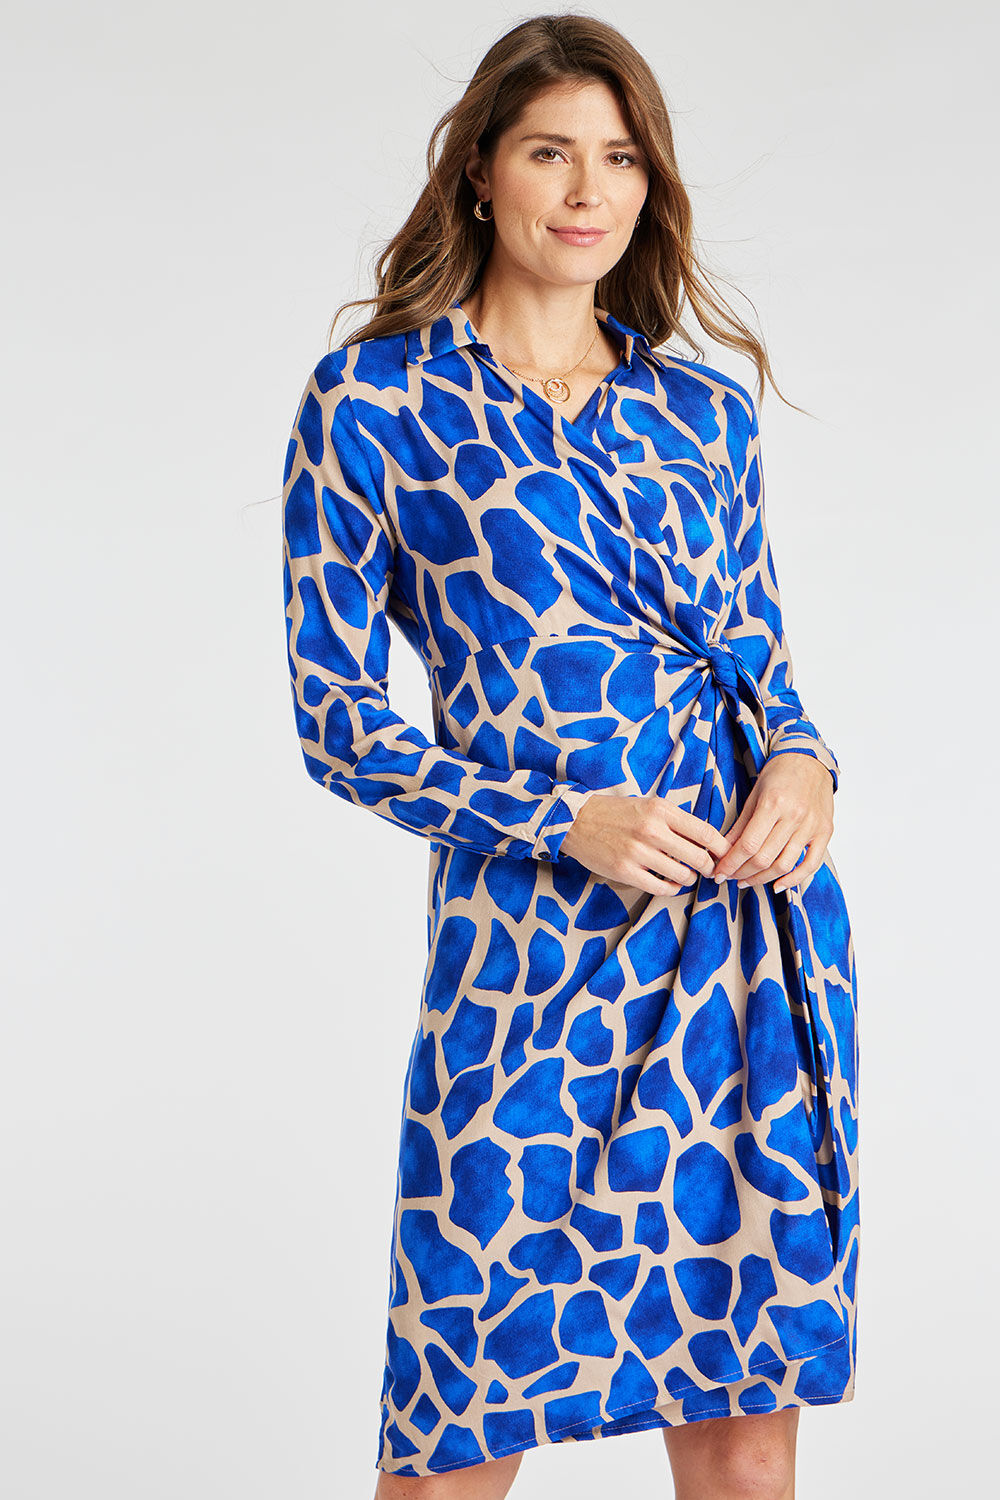 Bonmarche Blue Giraffe Print Wrap Front Dress, Size: 12